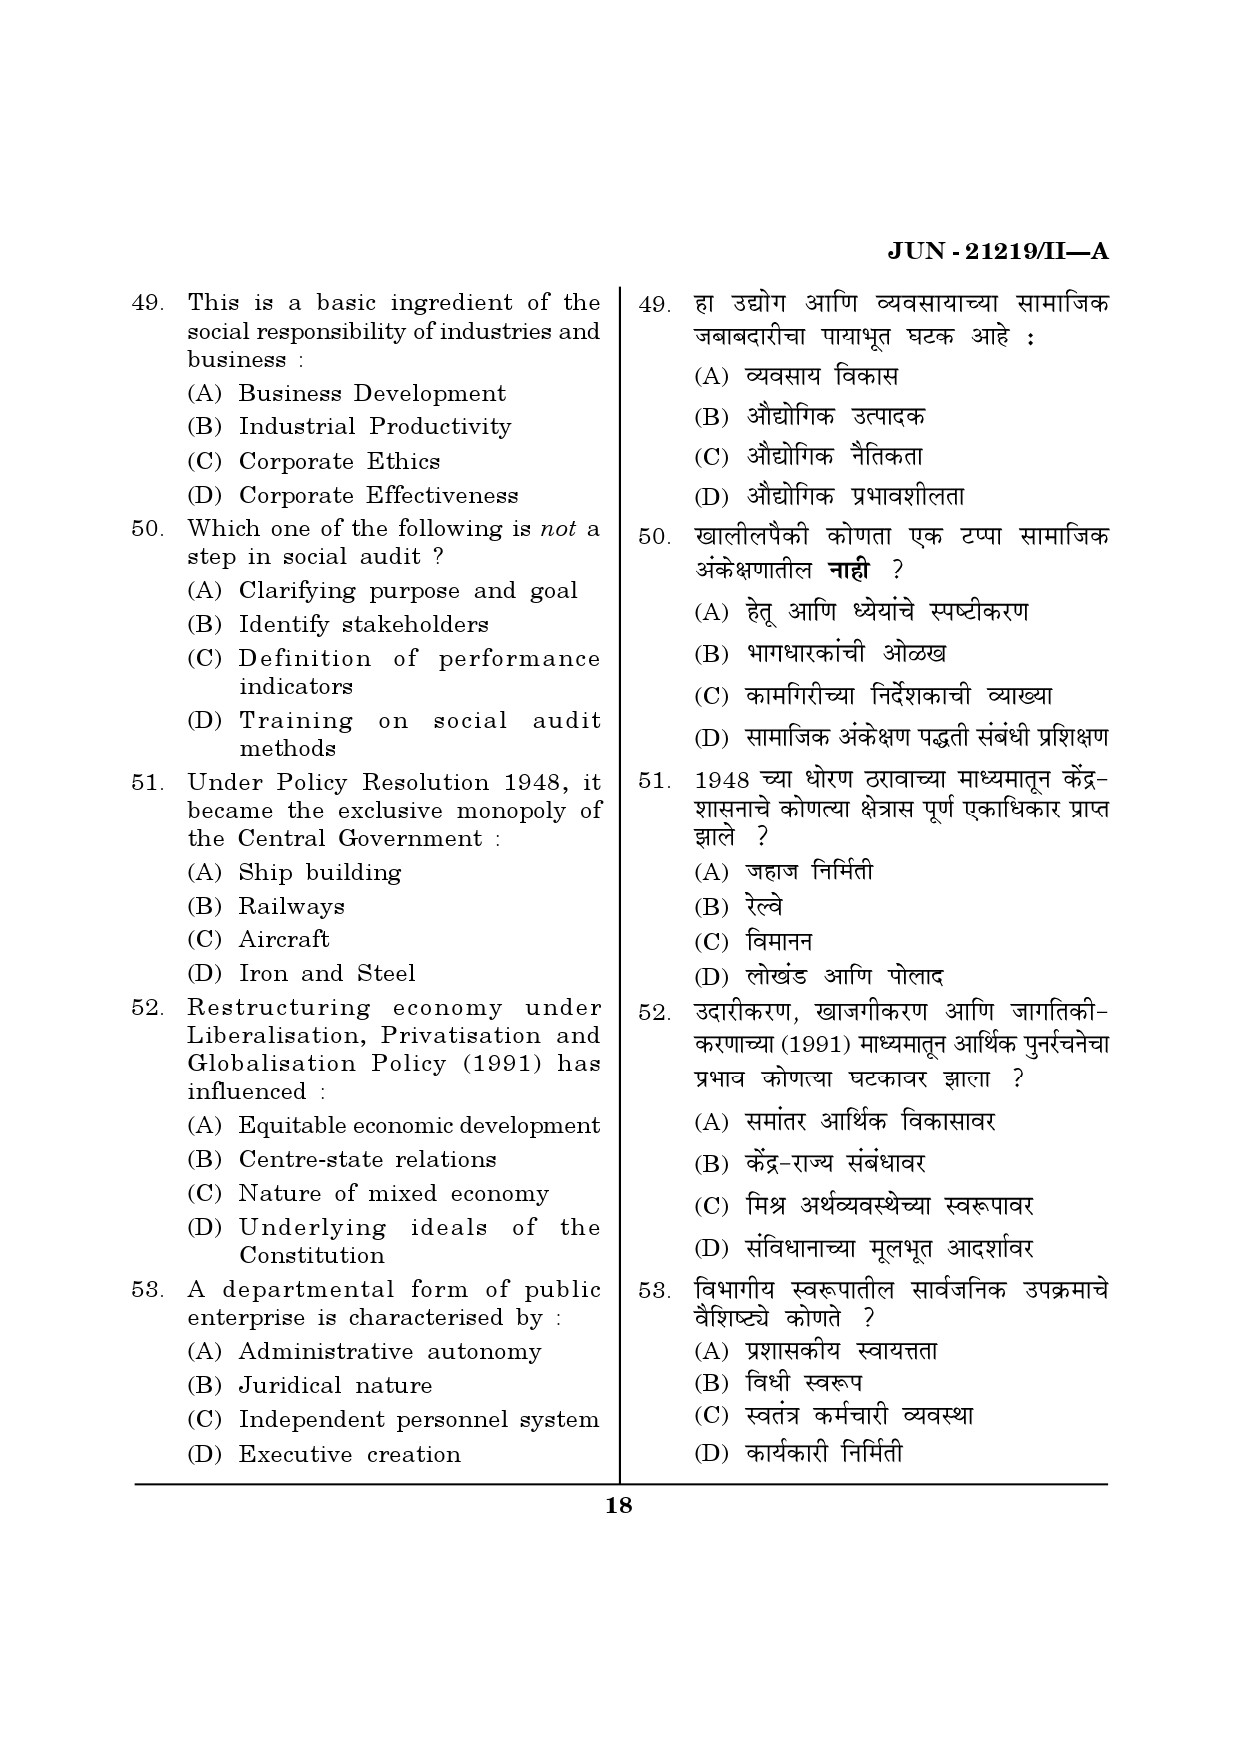 Maharashtra SET Public Administration Question Paper II June 2019 17